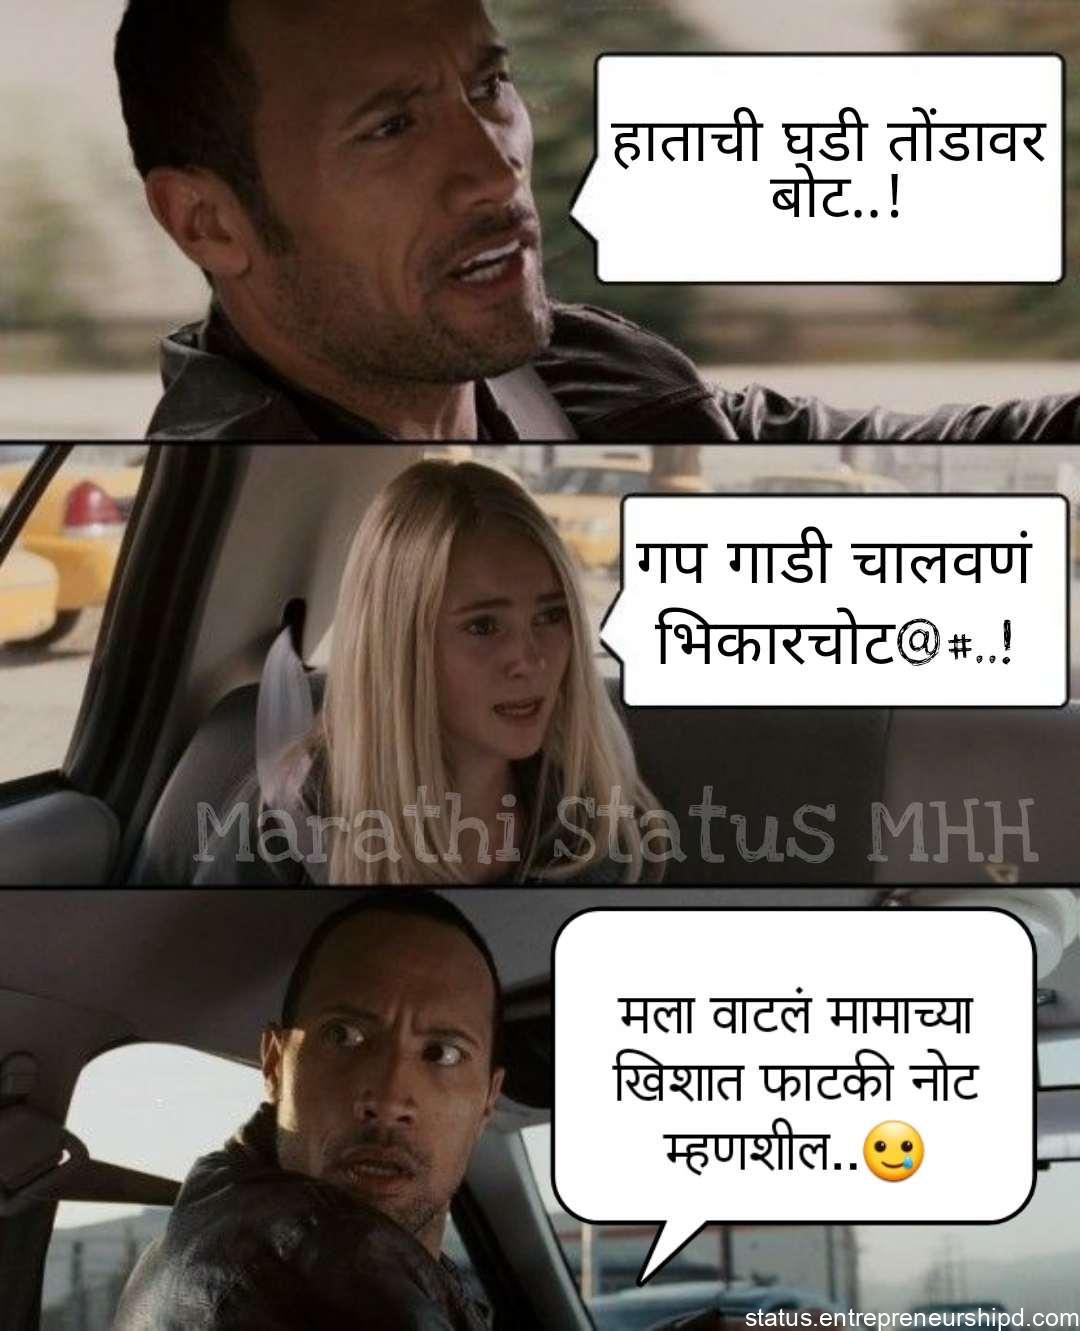 Marathi memes on car